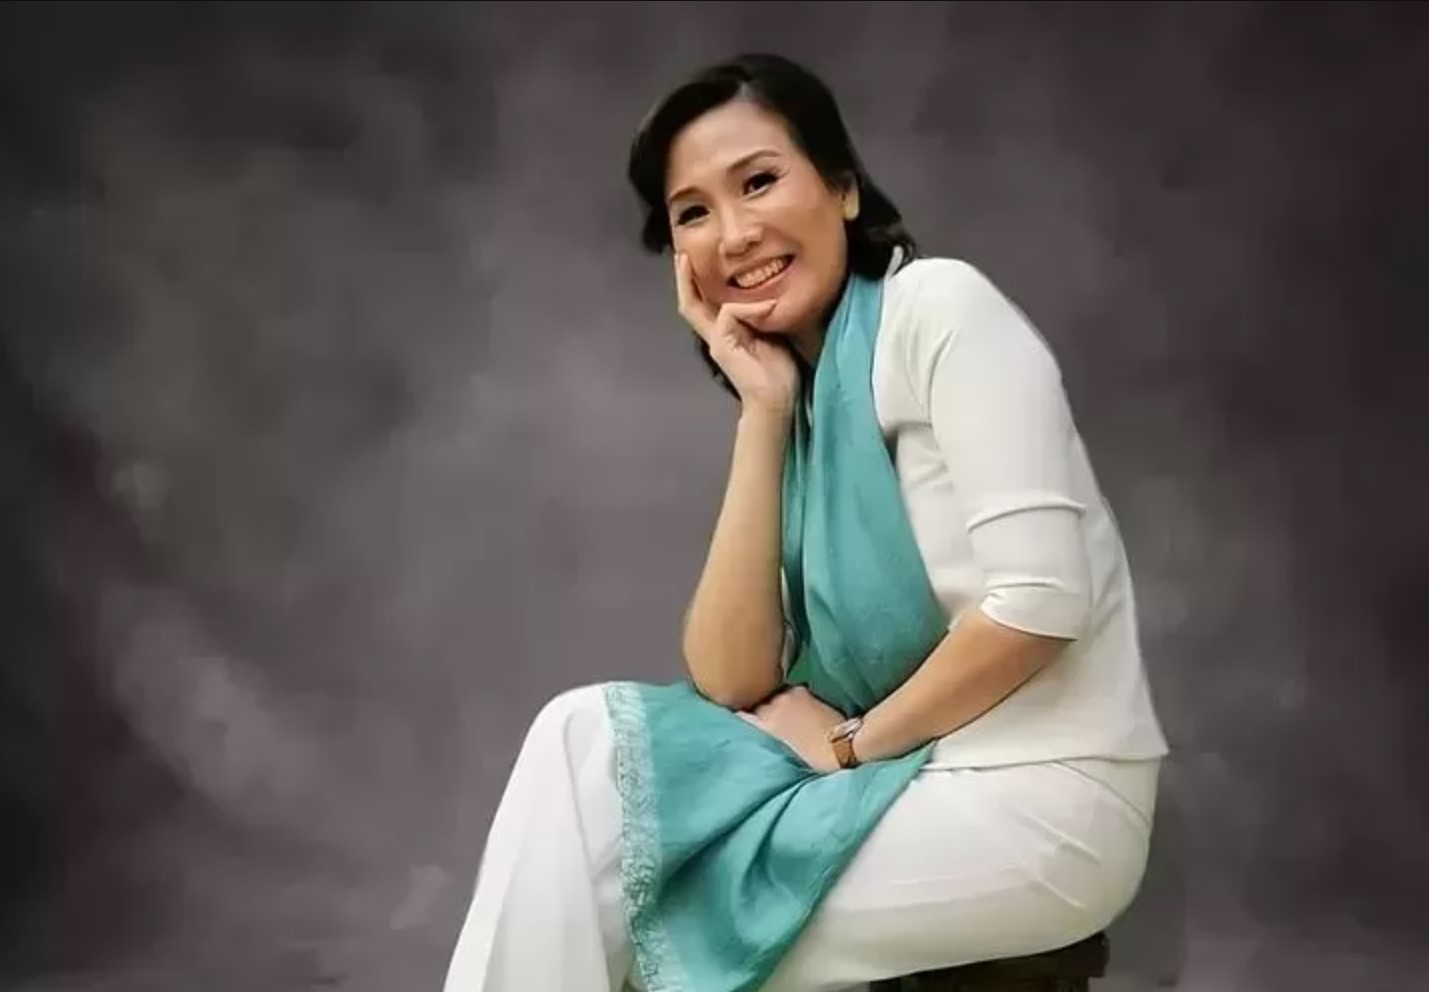 Tuai Banyak Pujian, Berikut Biodata dan Profil Veronica Tan, Mantan istri Ahok Yang Bikin Bangga